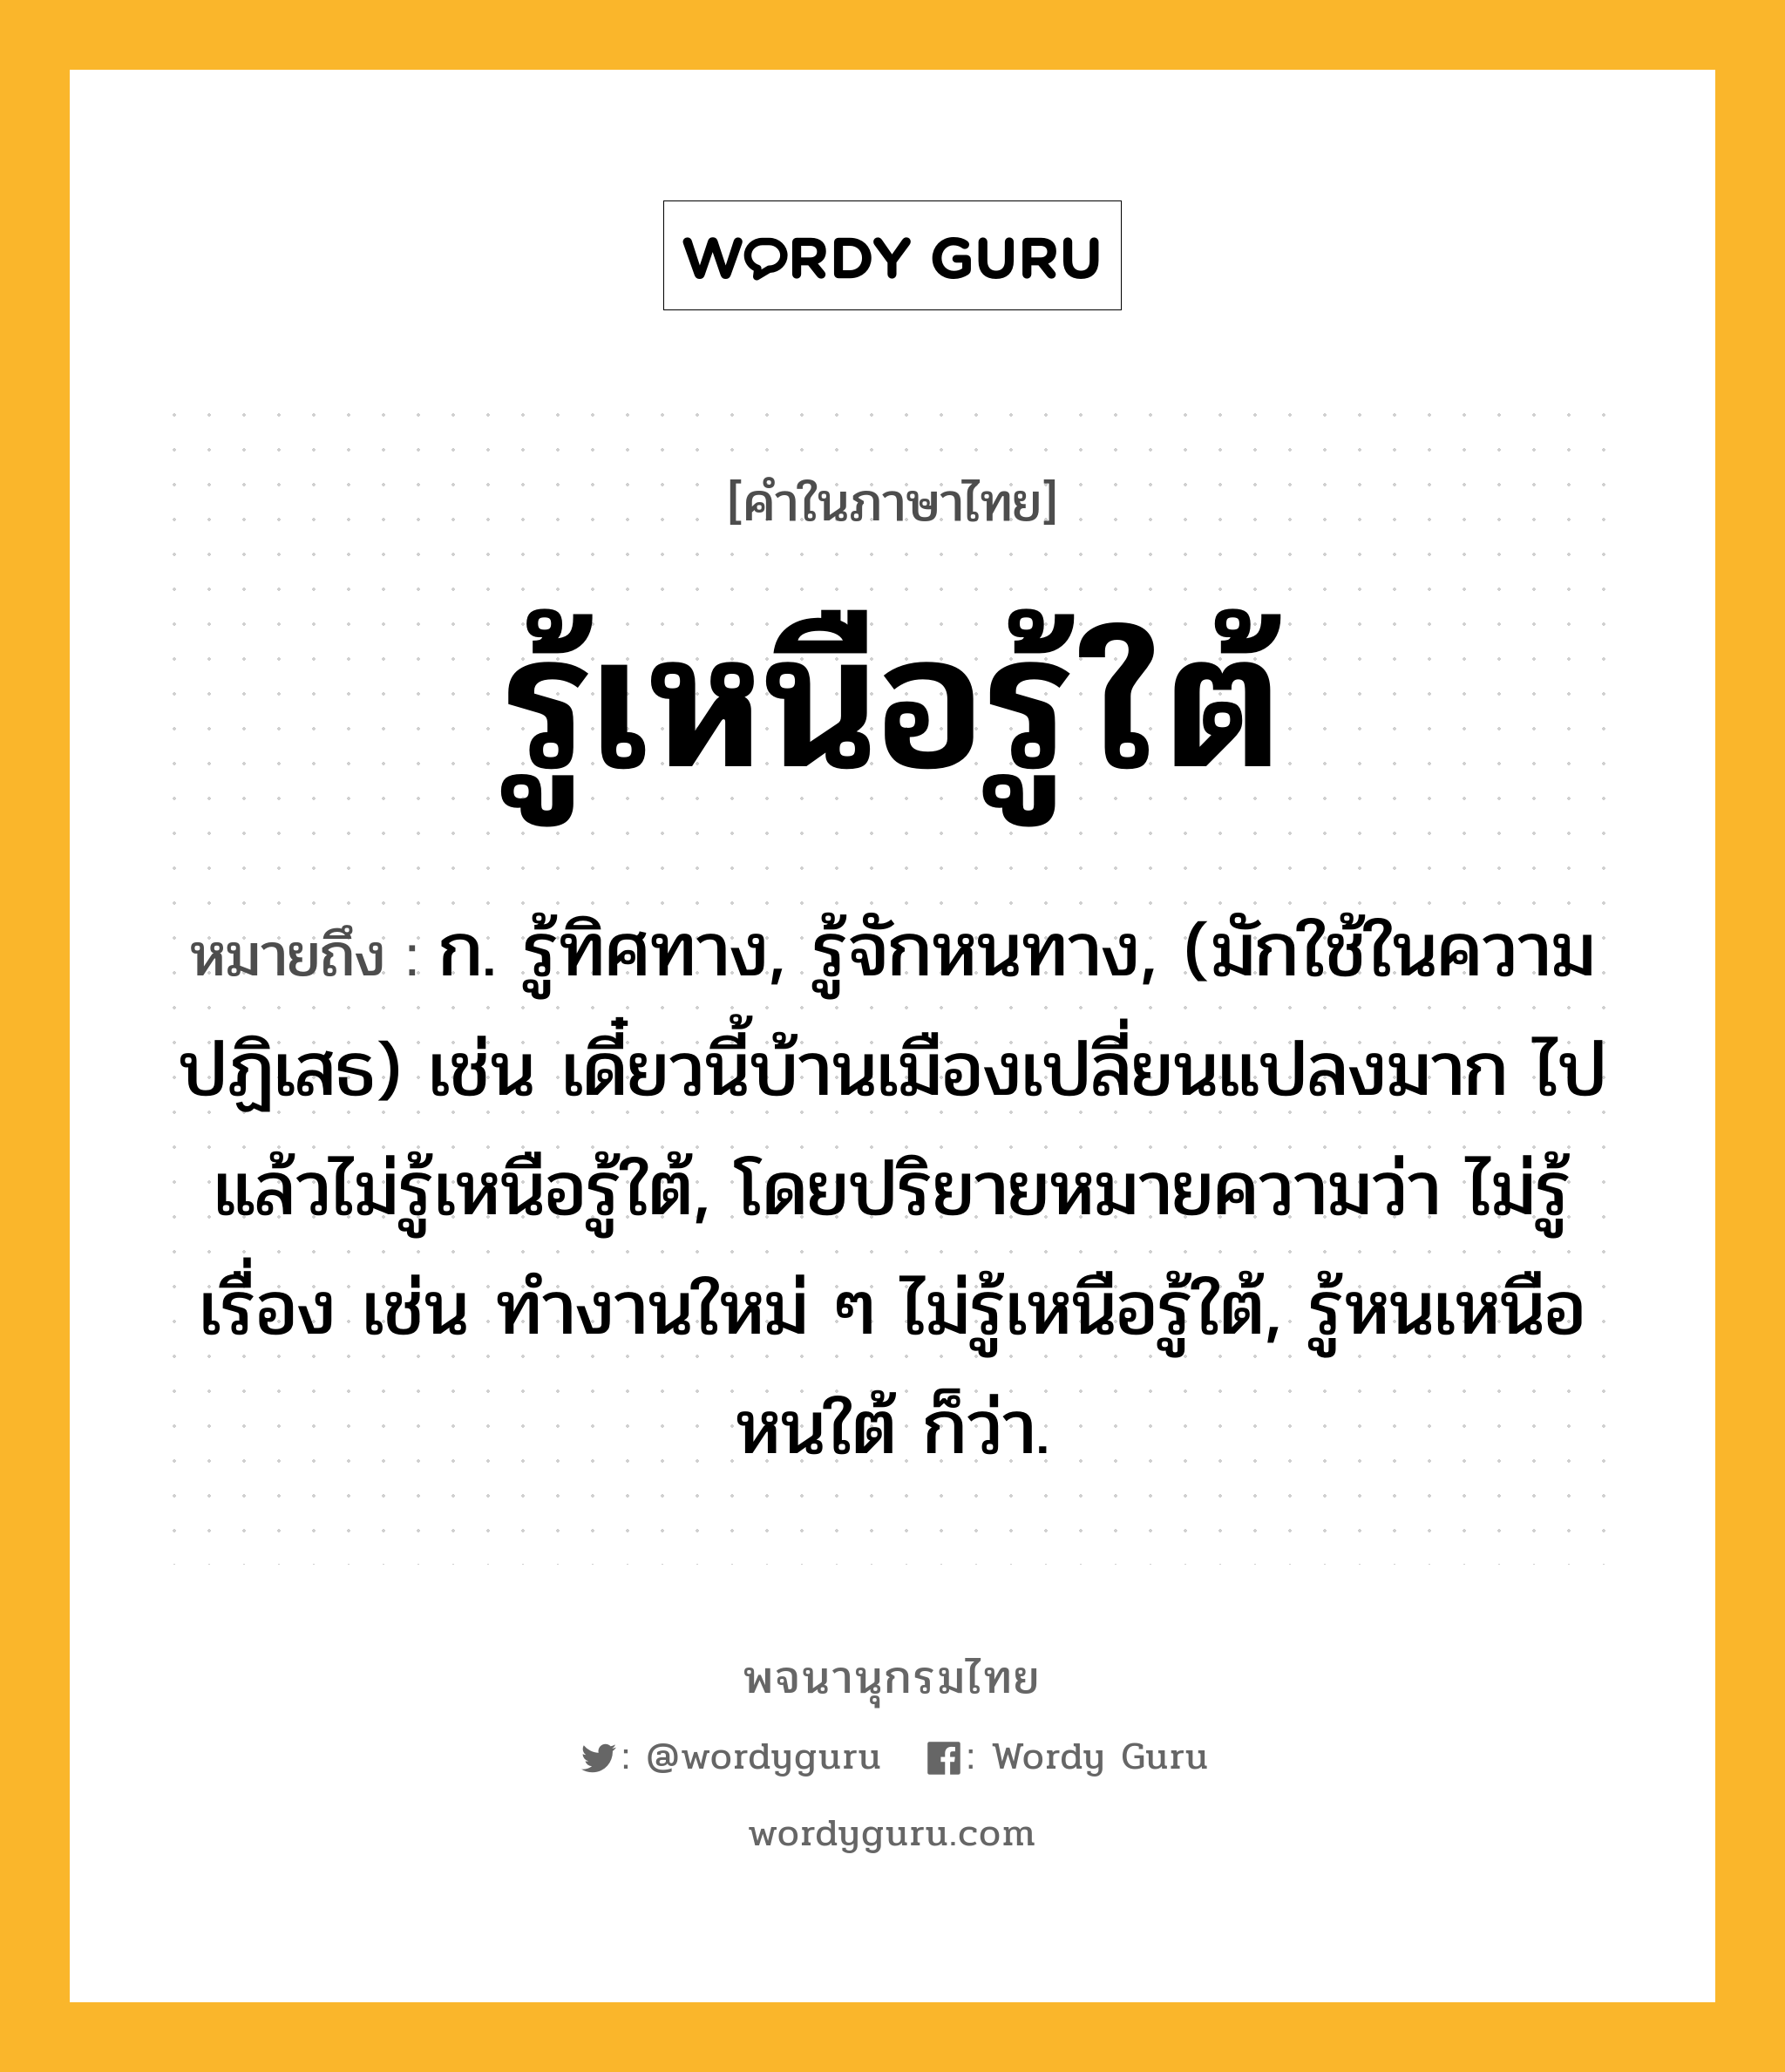 รู้เหนือรู้ใต้ ความหมาย หมายถึงอะไร?, คำในภาษาไทย รู้เหนือรู้ใต้ หมายถึง ก. รู้ทิศทาง, รู้จักหนทาง, (มักใช้ในความปฏิเสธ) เช่น เดี๋ยวนี้บ้านเมืองเปลี่ยนแปลงมาก ไปแล้วไม่รู้เหนือรู้ใต้, โดยปริยายหมายความว่า ไม่รู้เรื่อง เช่น ทำงานใหม่ ๆ ไม่รู้เหนือรู้ใต้, รู้หนเหนือหนใต้ ก็ว่า.